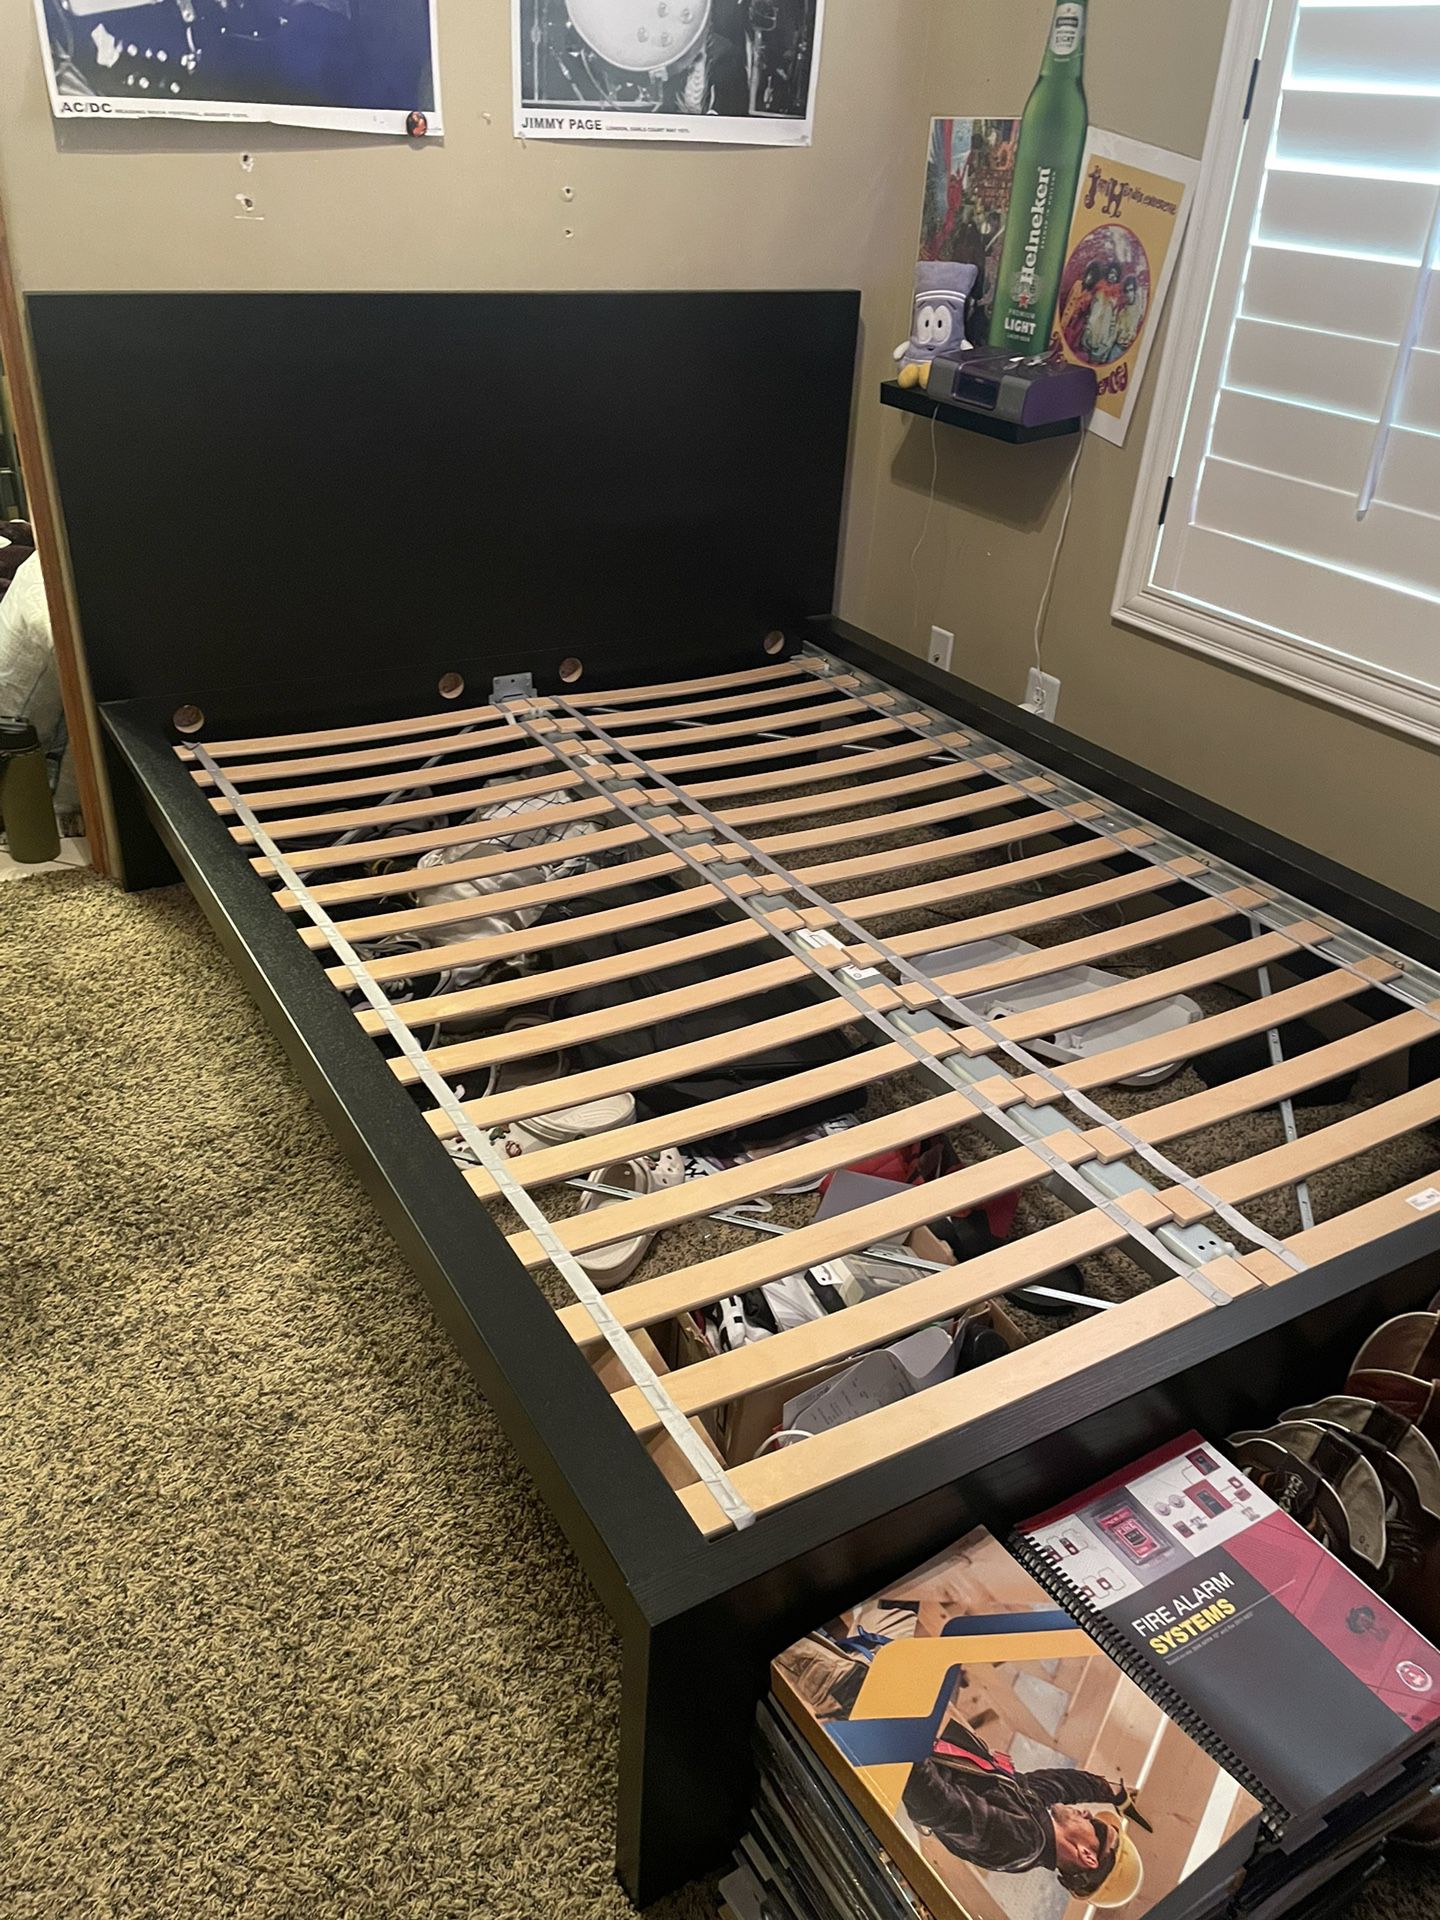 IKEA Full Bed Frame 